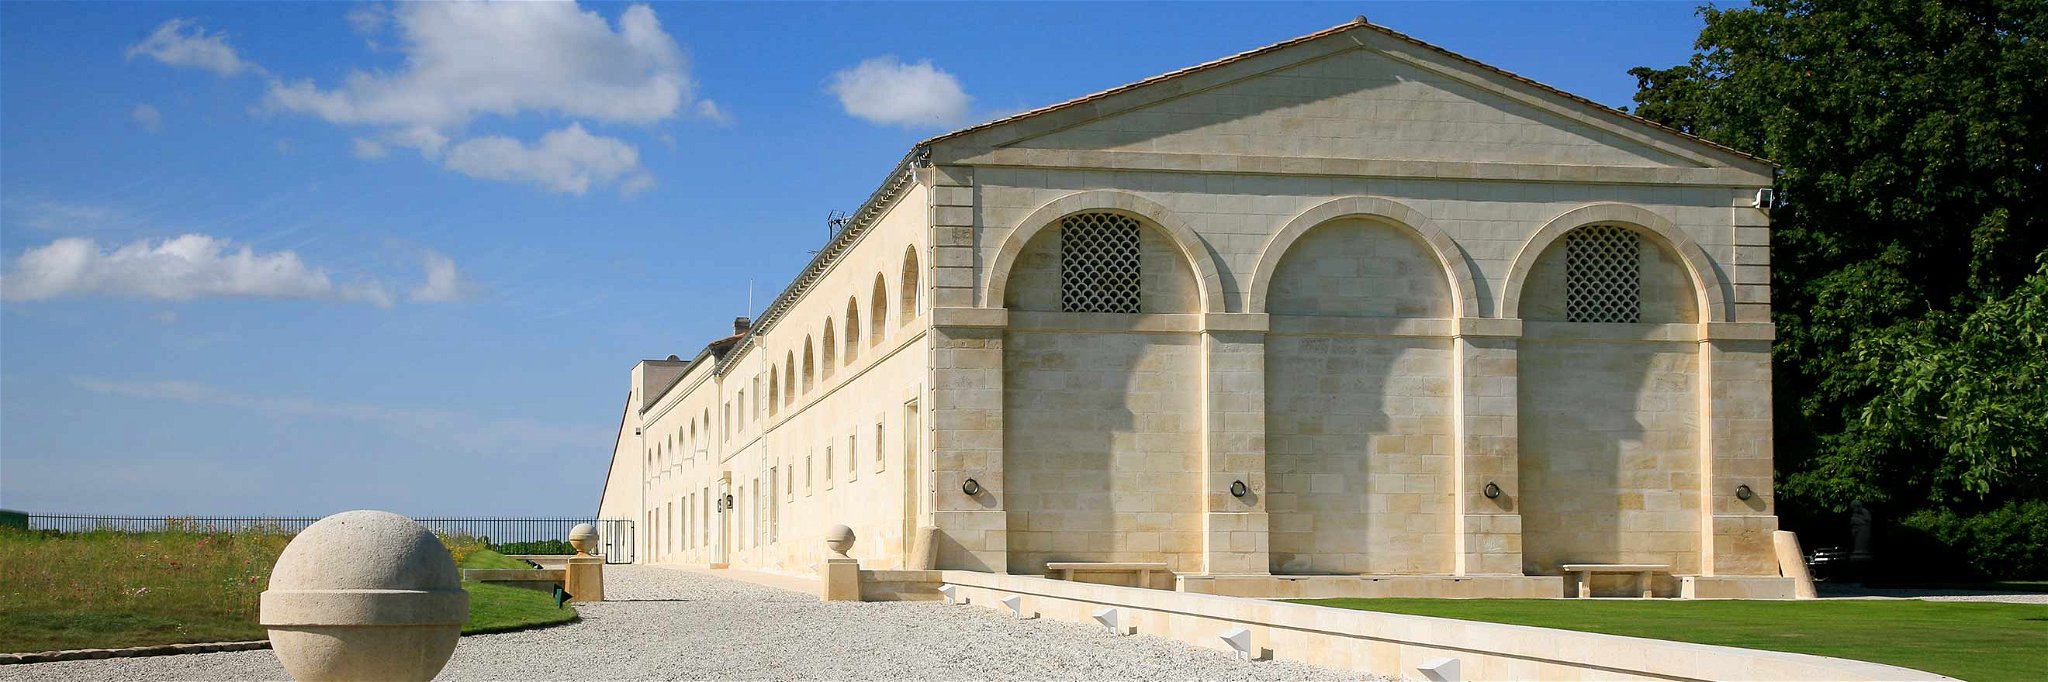 Einfahrt zum Château Mouton Rothschild